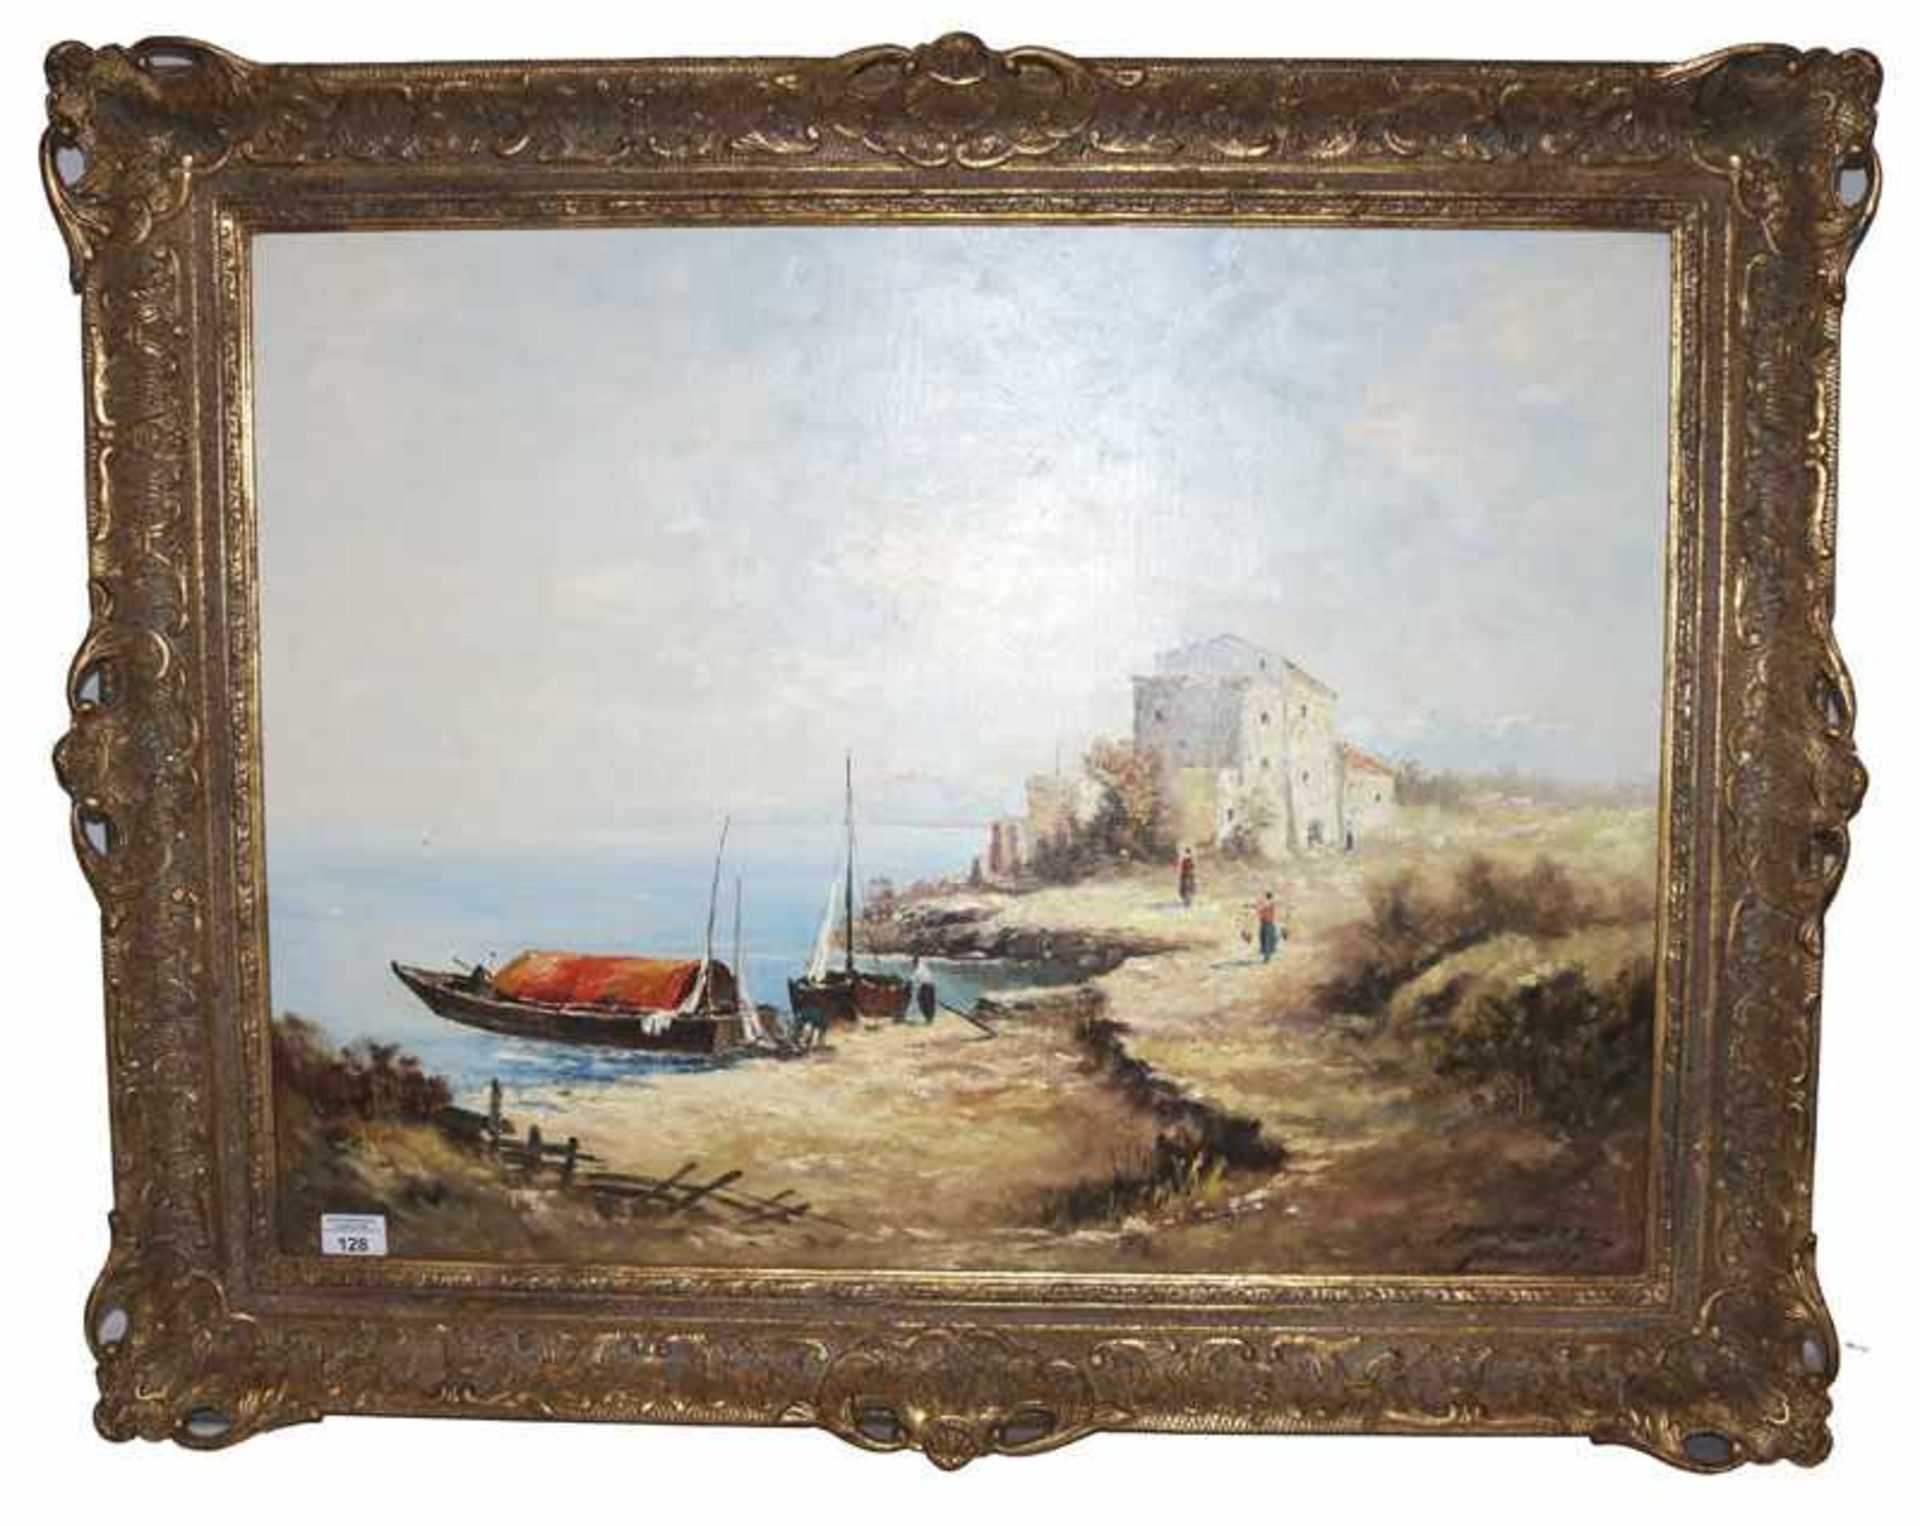 Gemälde ÖL/LW 'Küsten-Szenerie mit Booten', signiert A. (Andreas) Betz, * 1910 + 1963, gerahmt,